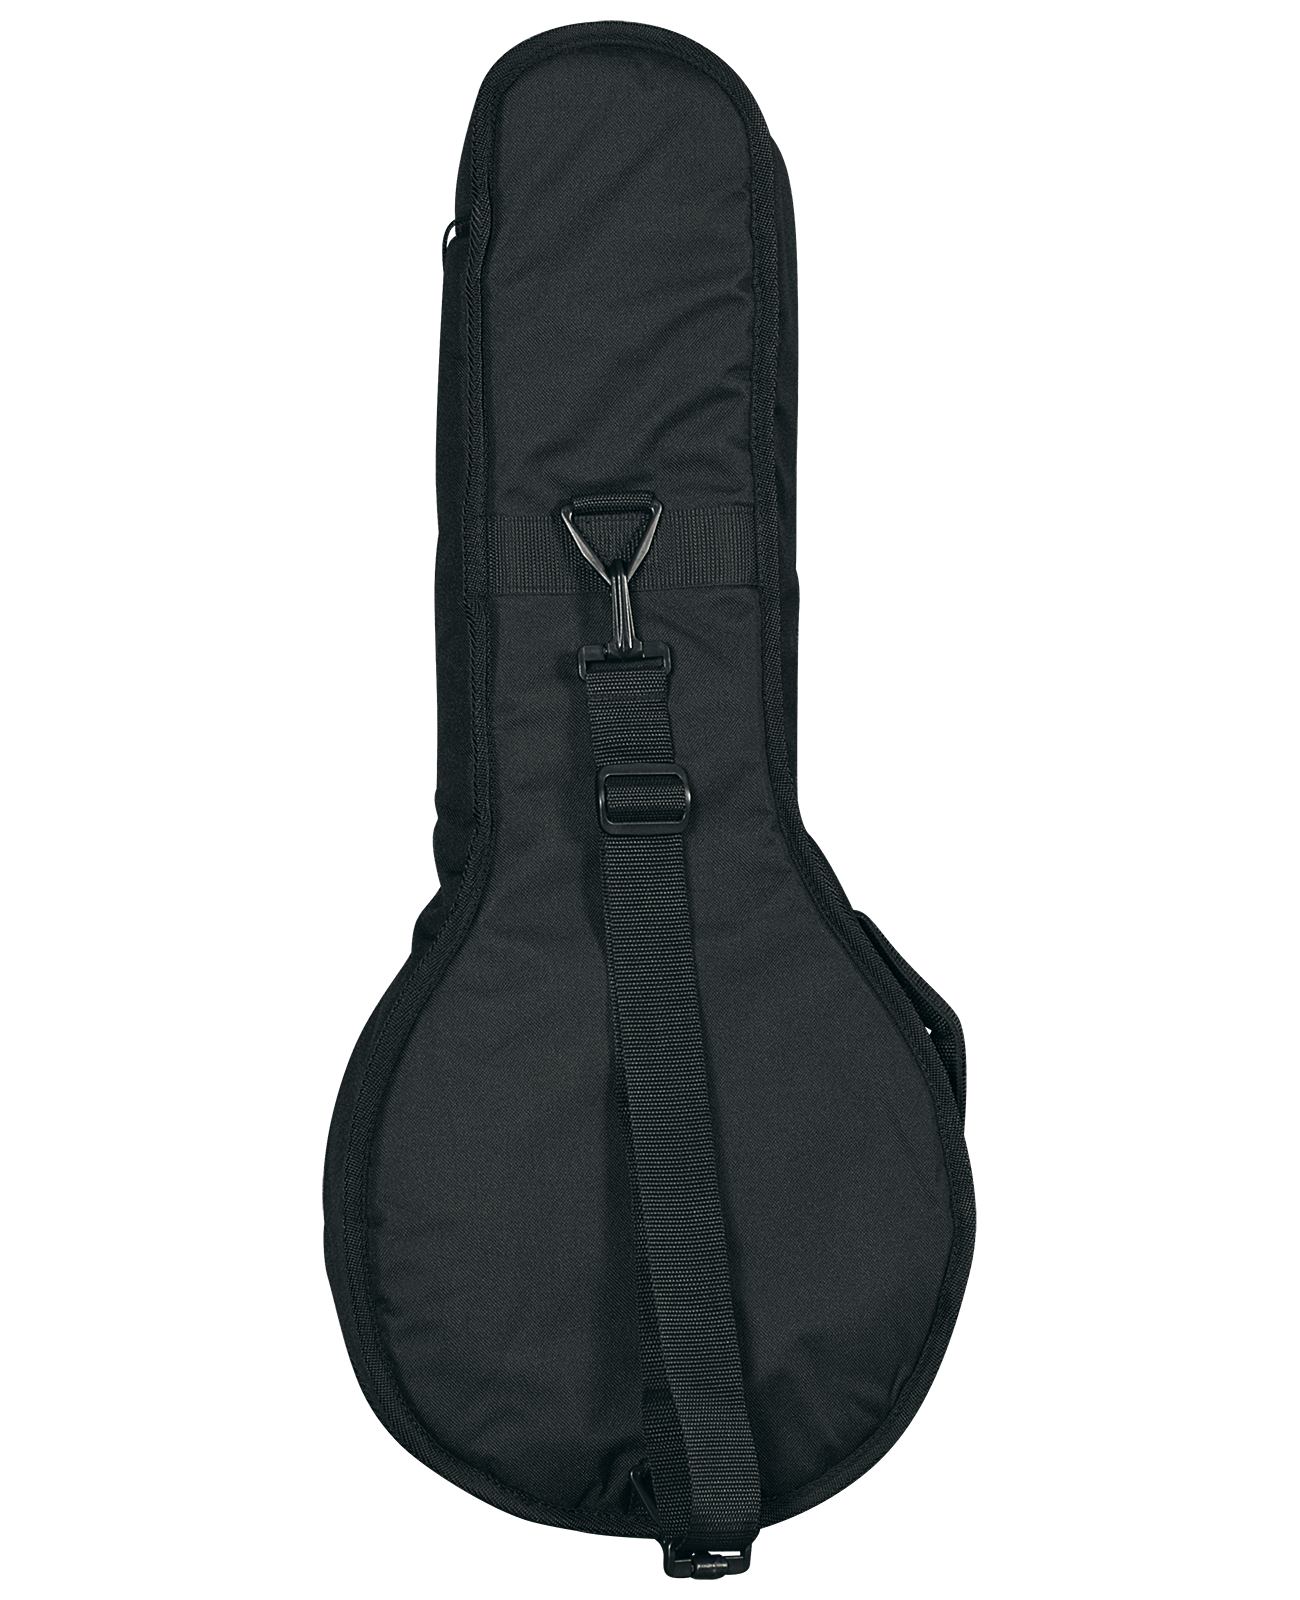 Superior C-3770 Trailpak II A or F-Model Mandolin Gig Bag